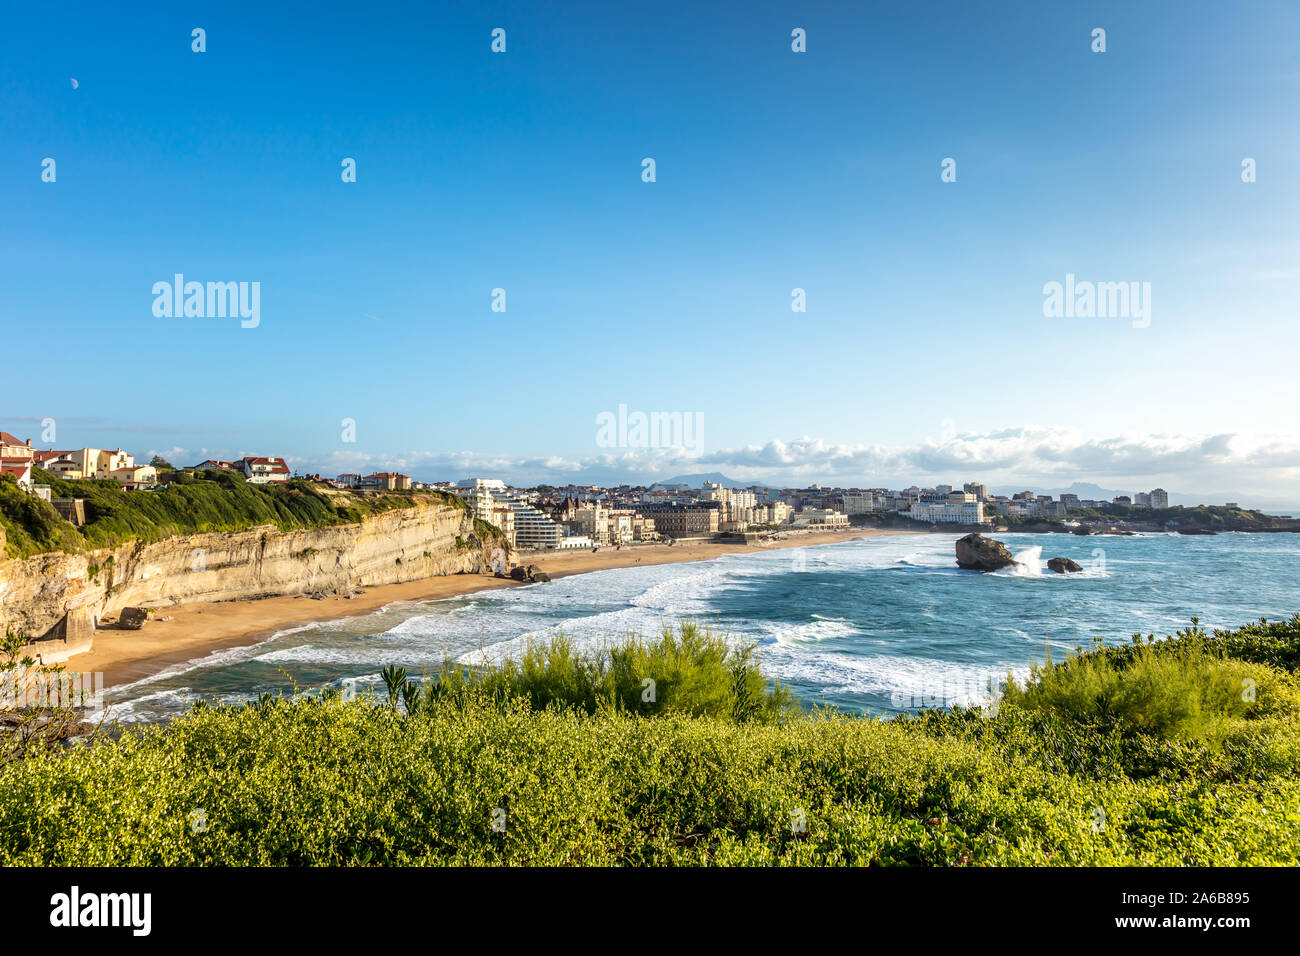 Biarritz, Francia - 06 de septiembre de 2019 - Vista de la playa y de la ciudad de Biarritz, la riviera francesa, Francia Foto de stock